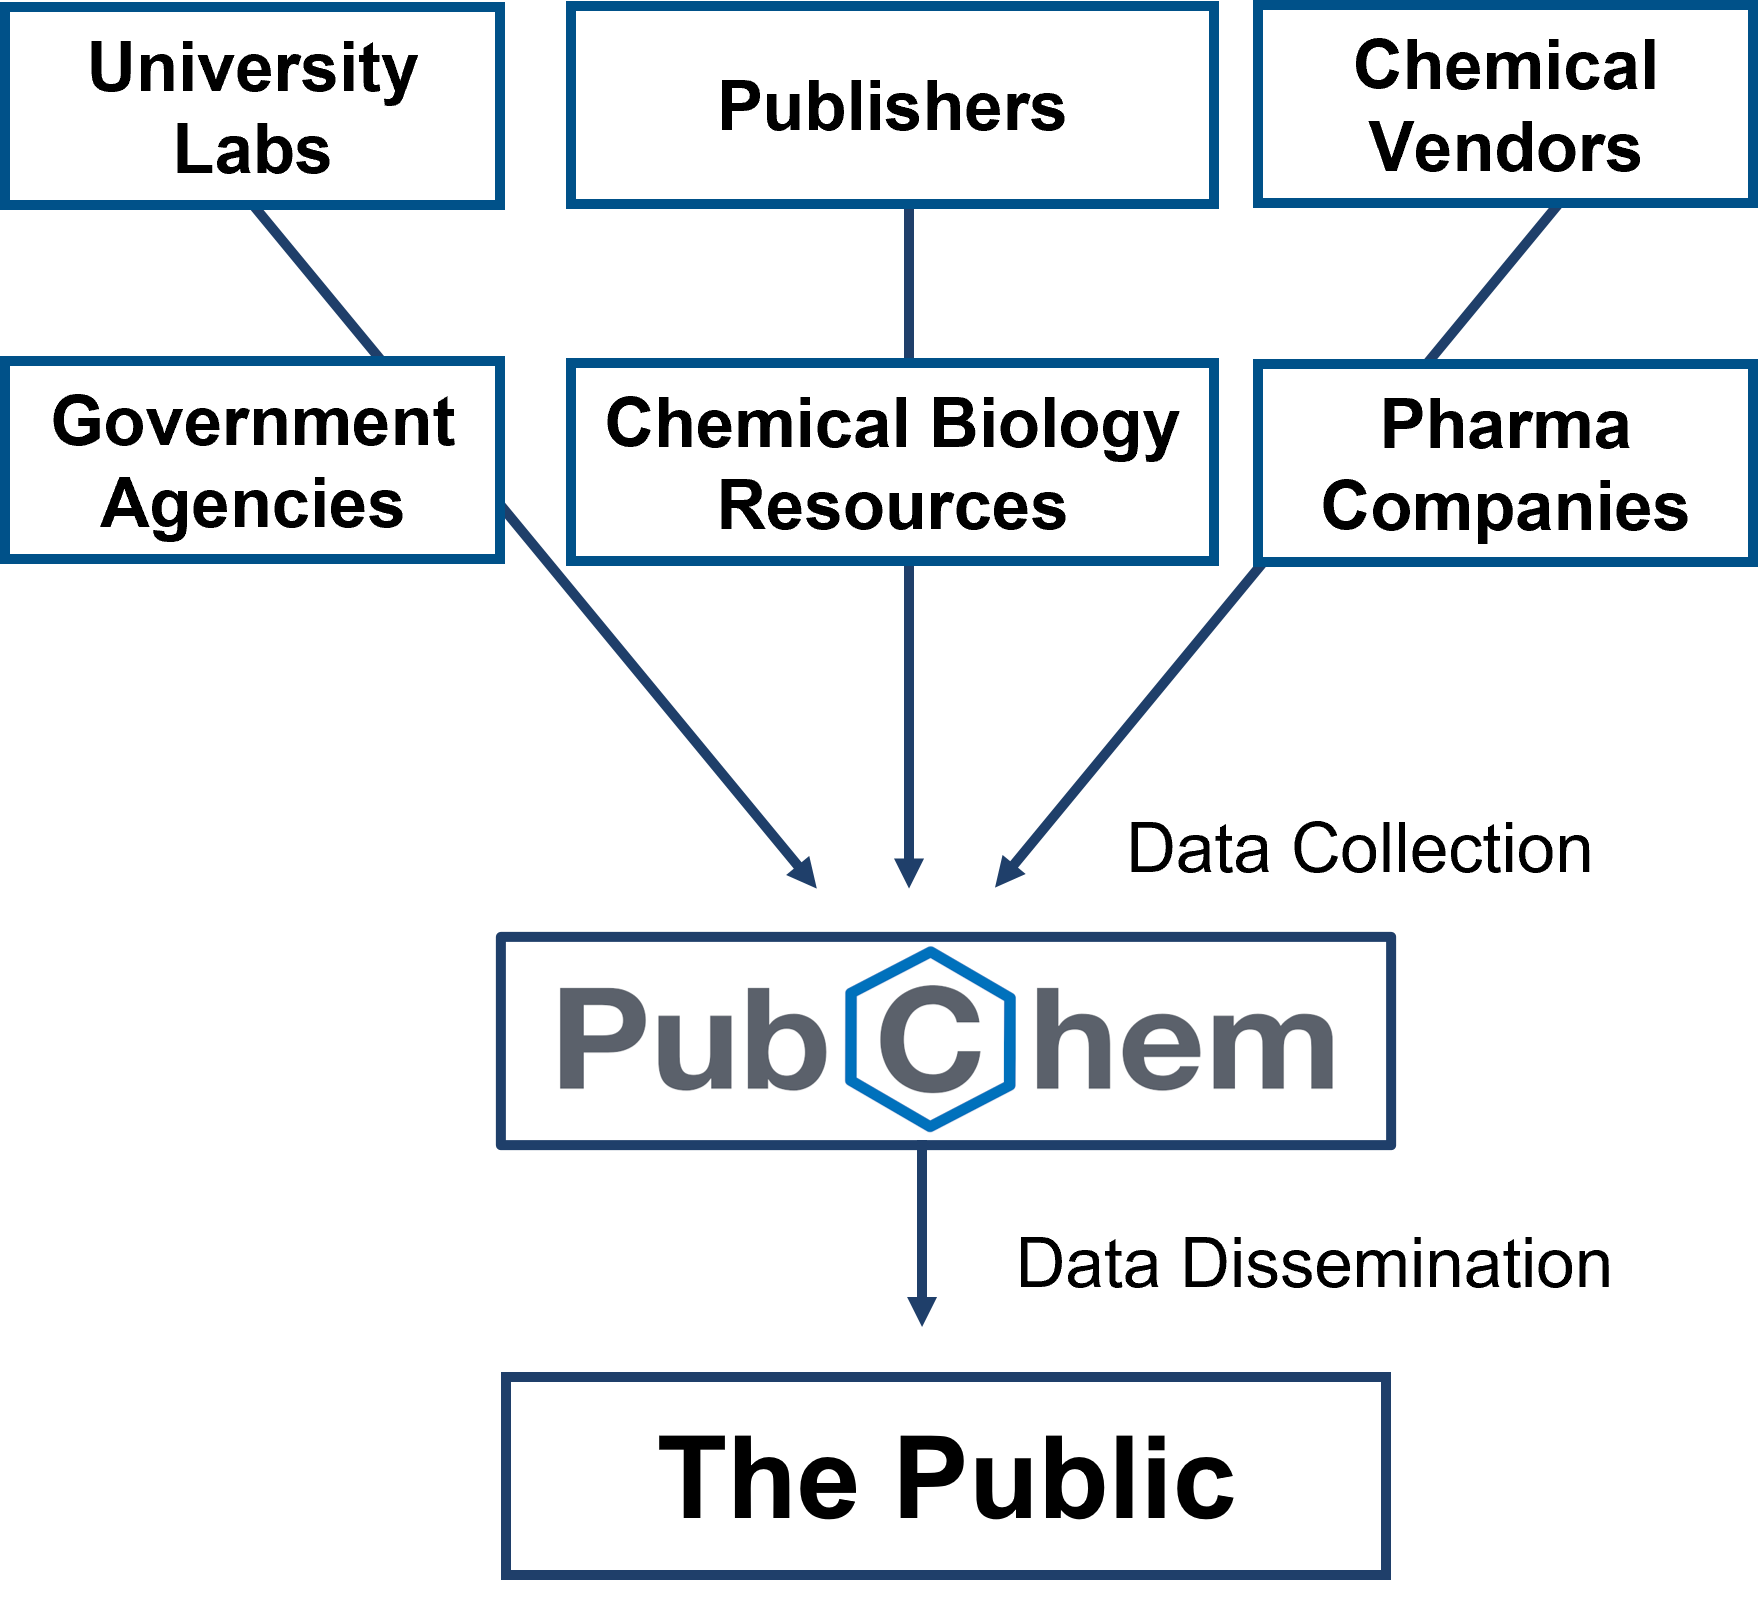 Description of PubChem data sources